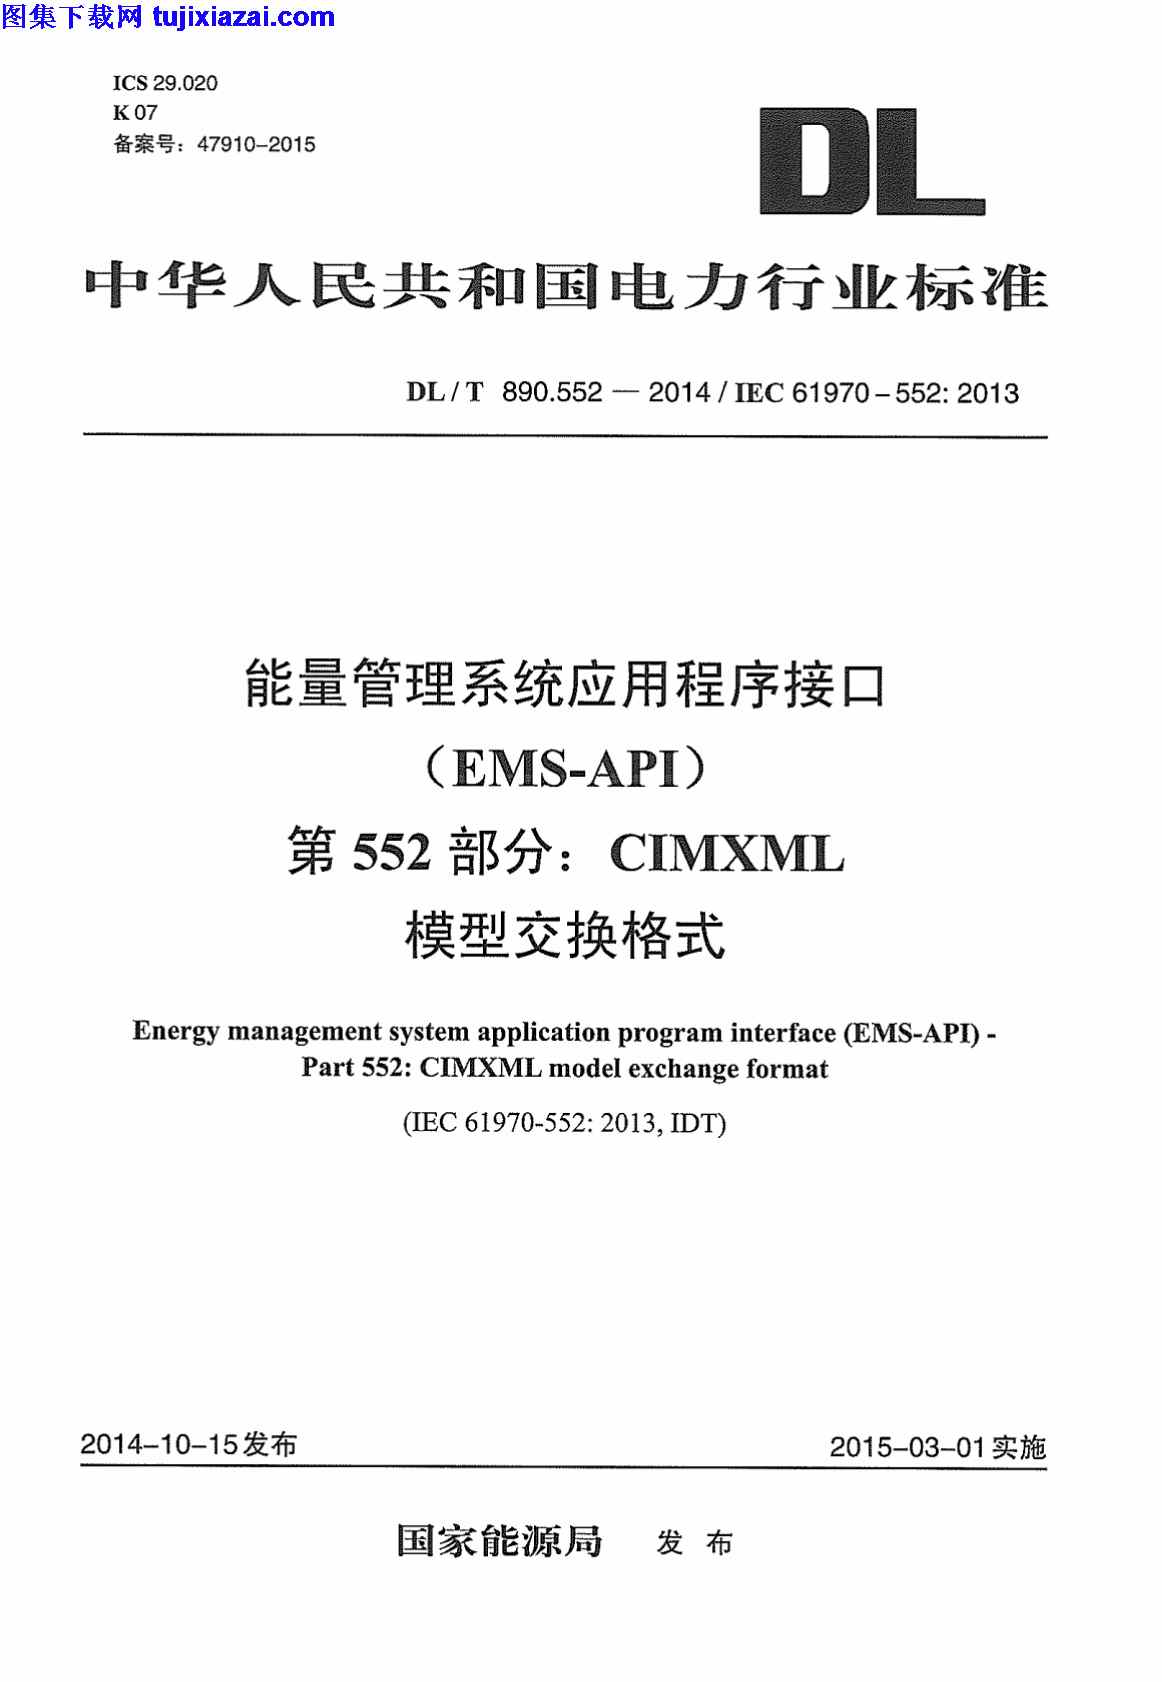 CIMXML模型交换格式,DLT890_552-2014,电力规范,第552部分,能量管理系统应用程序接口,能量管理系统应用程序接口_第552部分_CIMXML模型交换格式_电力规范,DLT890_552-2014_能量管理系统应用程序接口_第552部分_CIMXML模型交换格式_电力规范.pdf